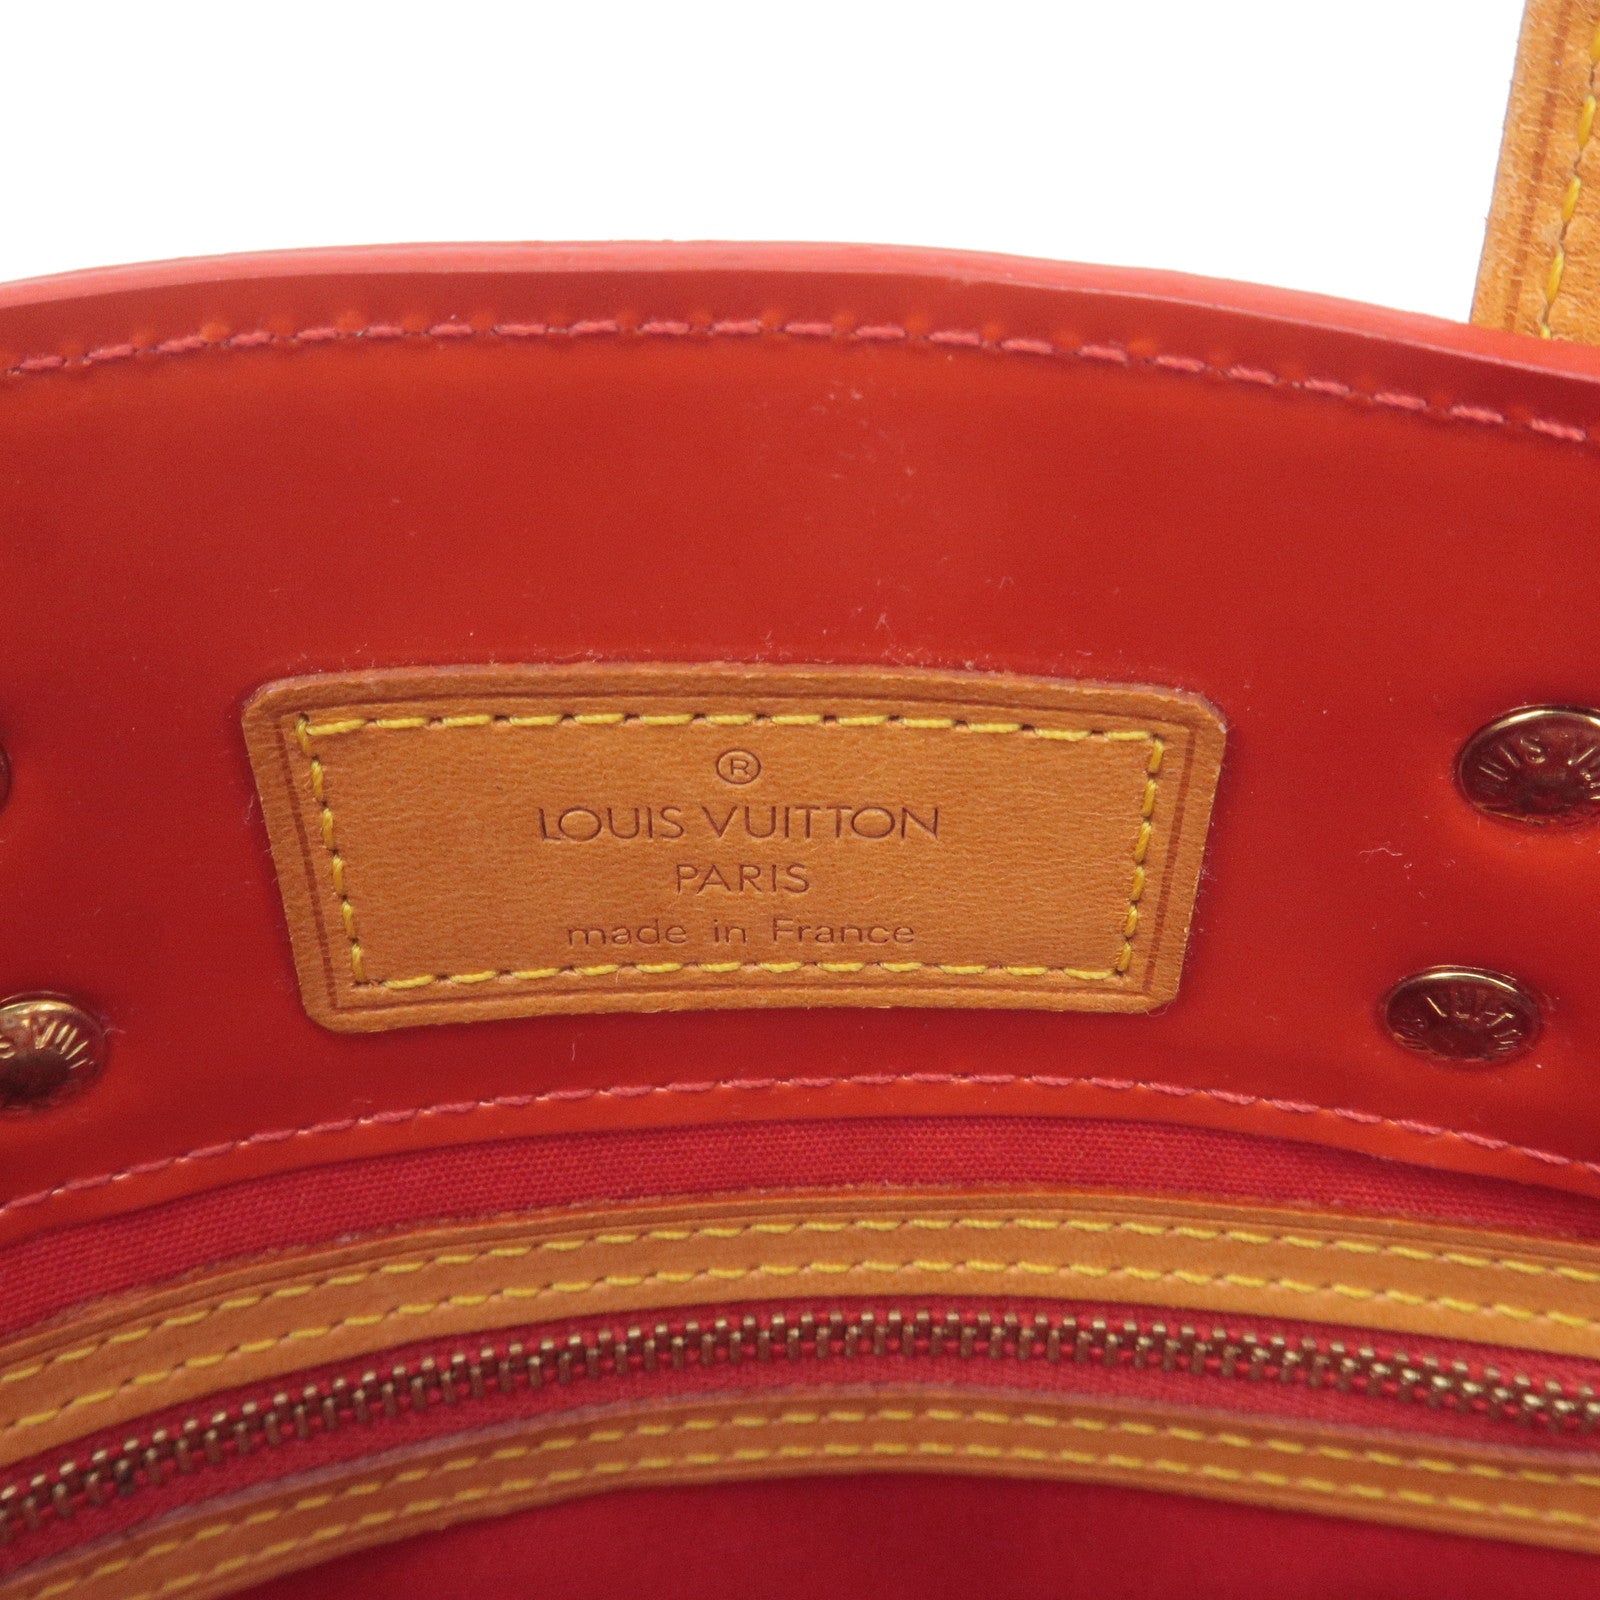 Used in Japan Bag] Louis Vuitton Lead Mm Vernis Monogram Red Tote Bag